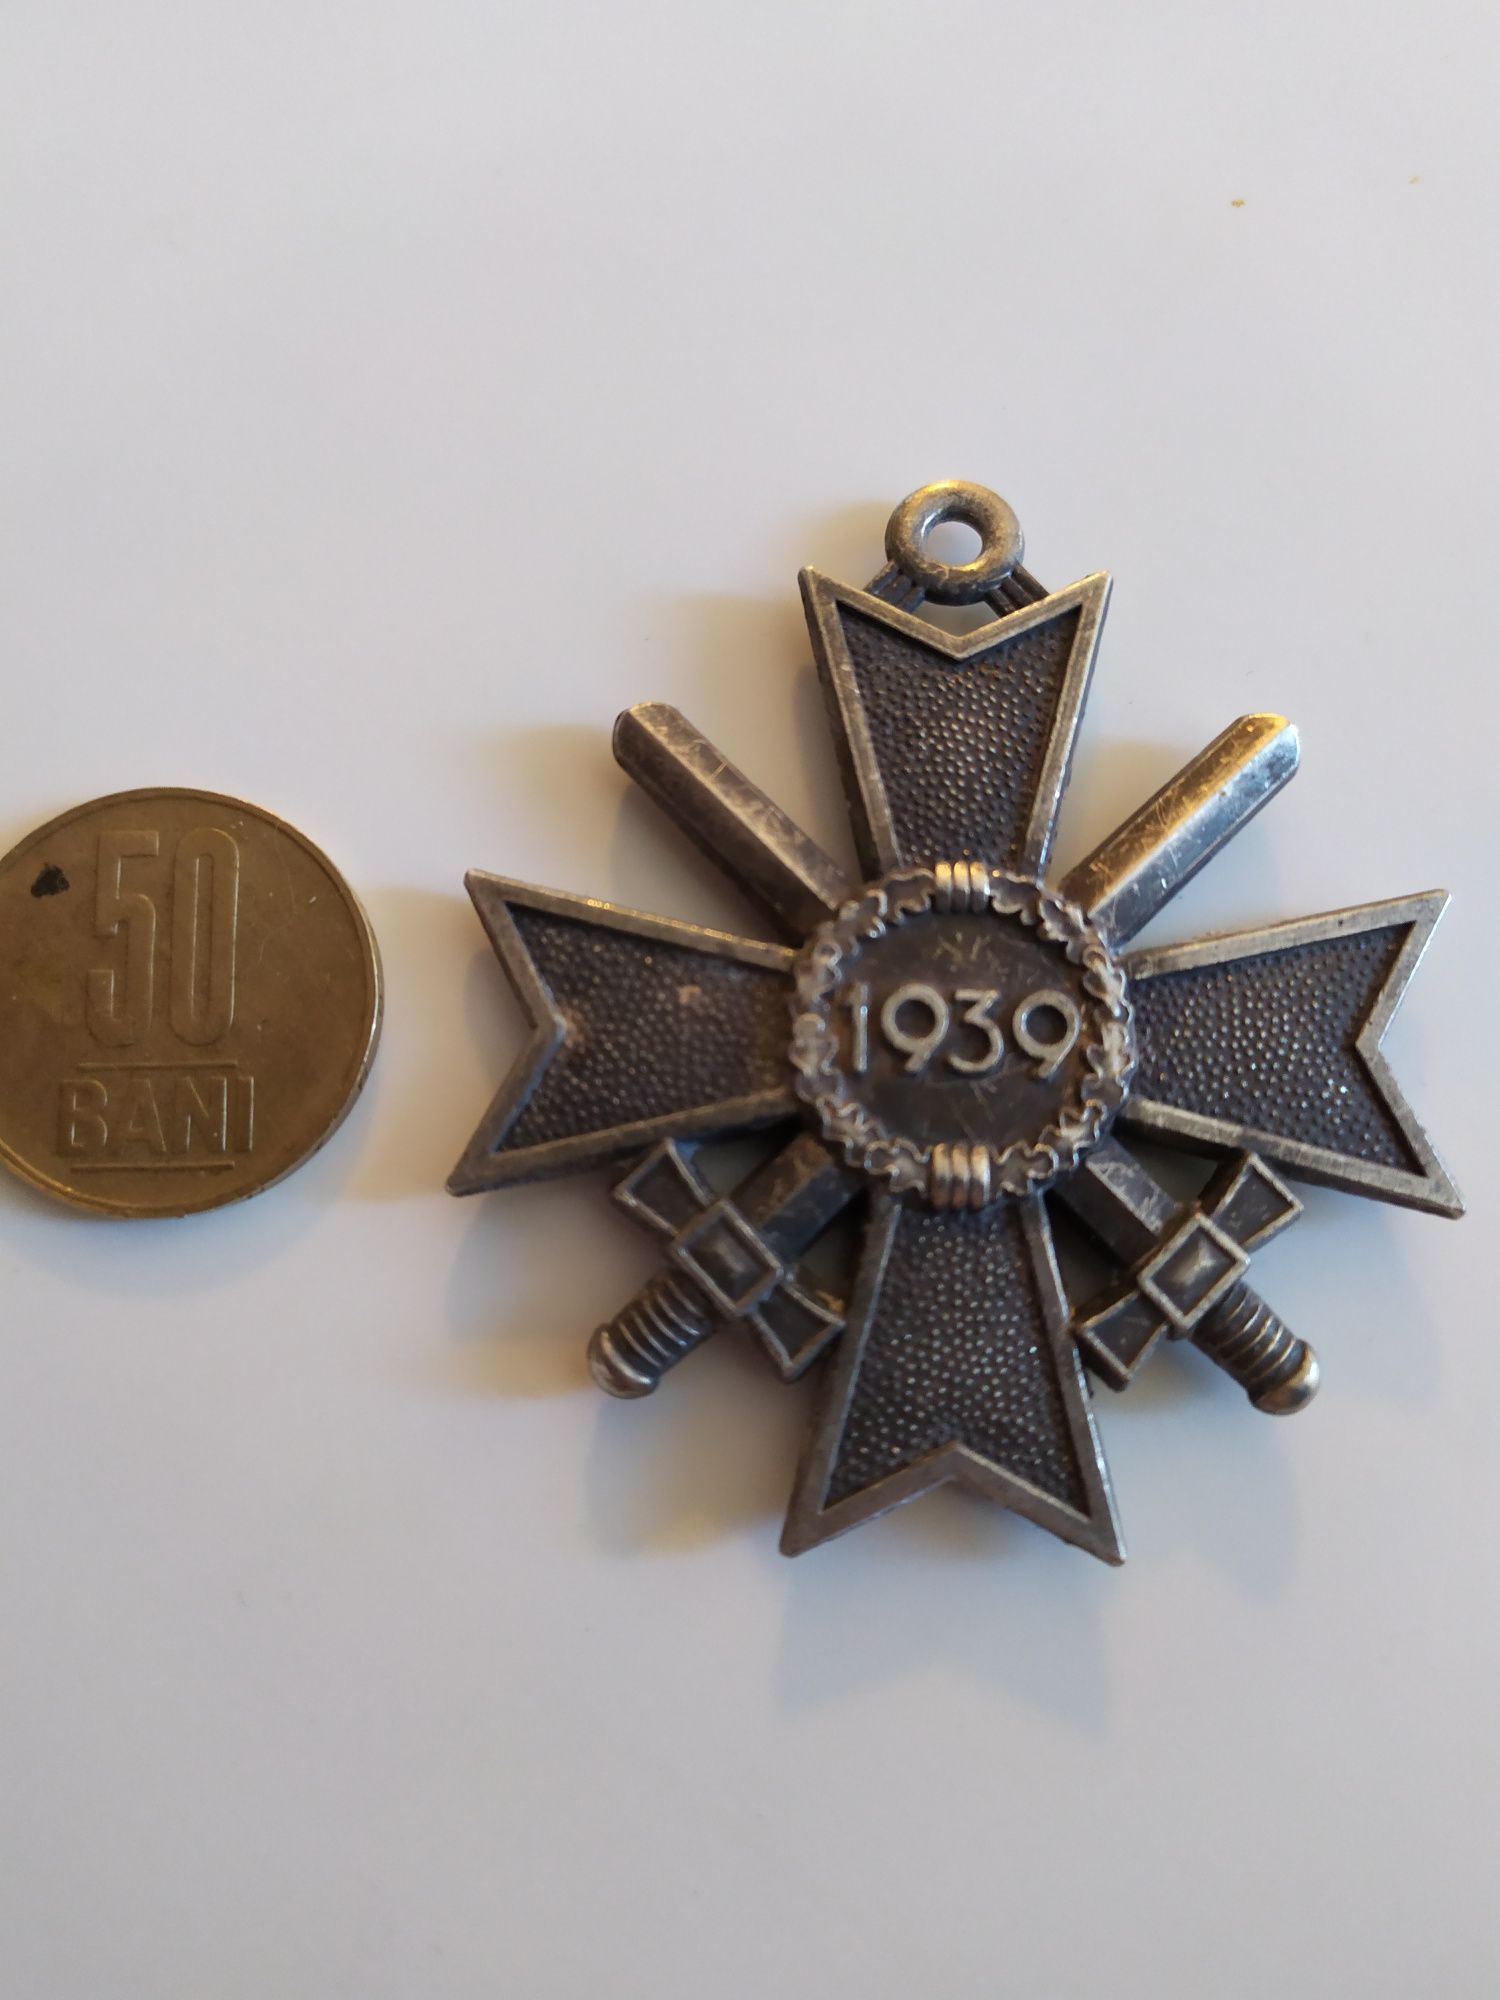 medalie 1939 Germania Al Treilea Reich nazista din Al doilea razboi